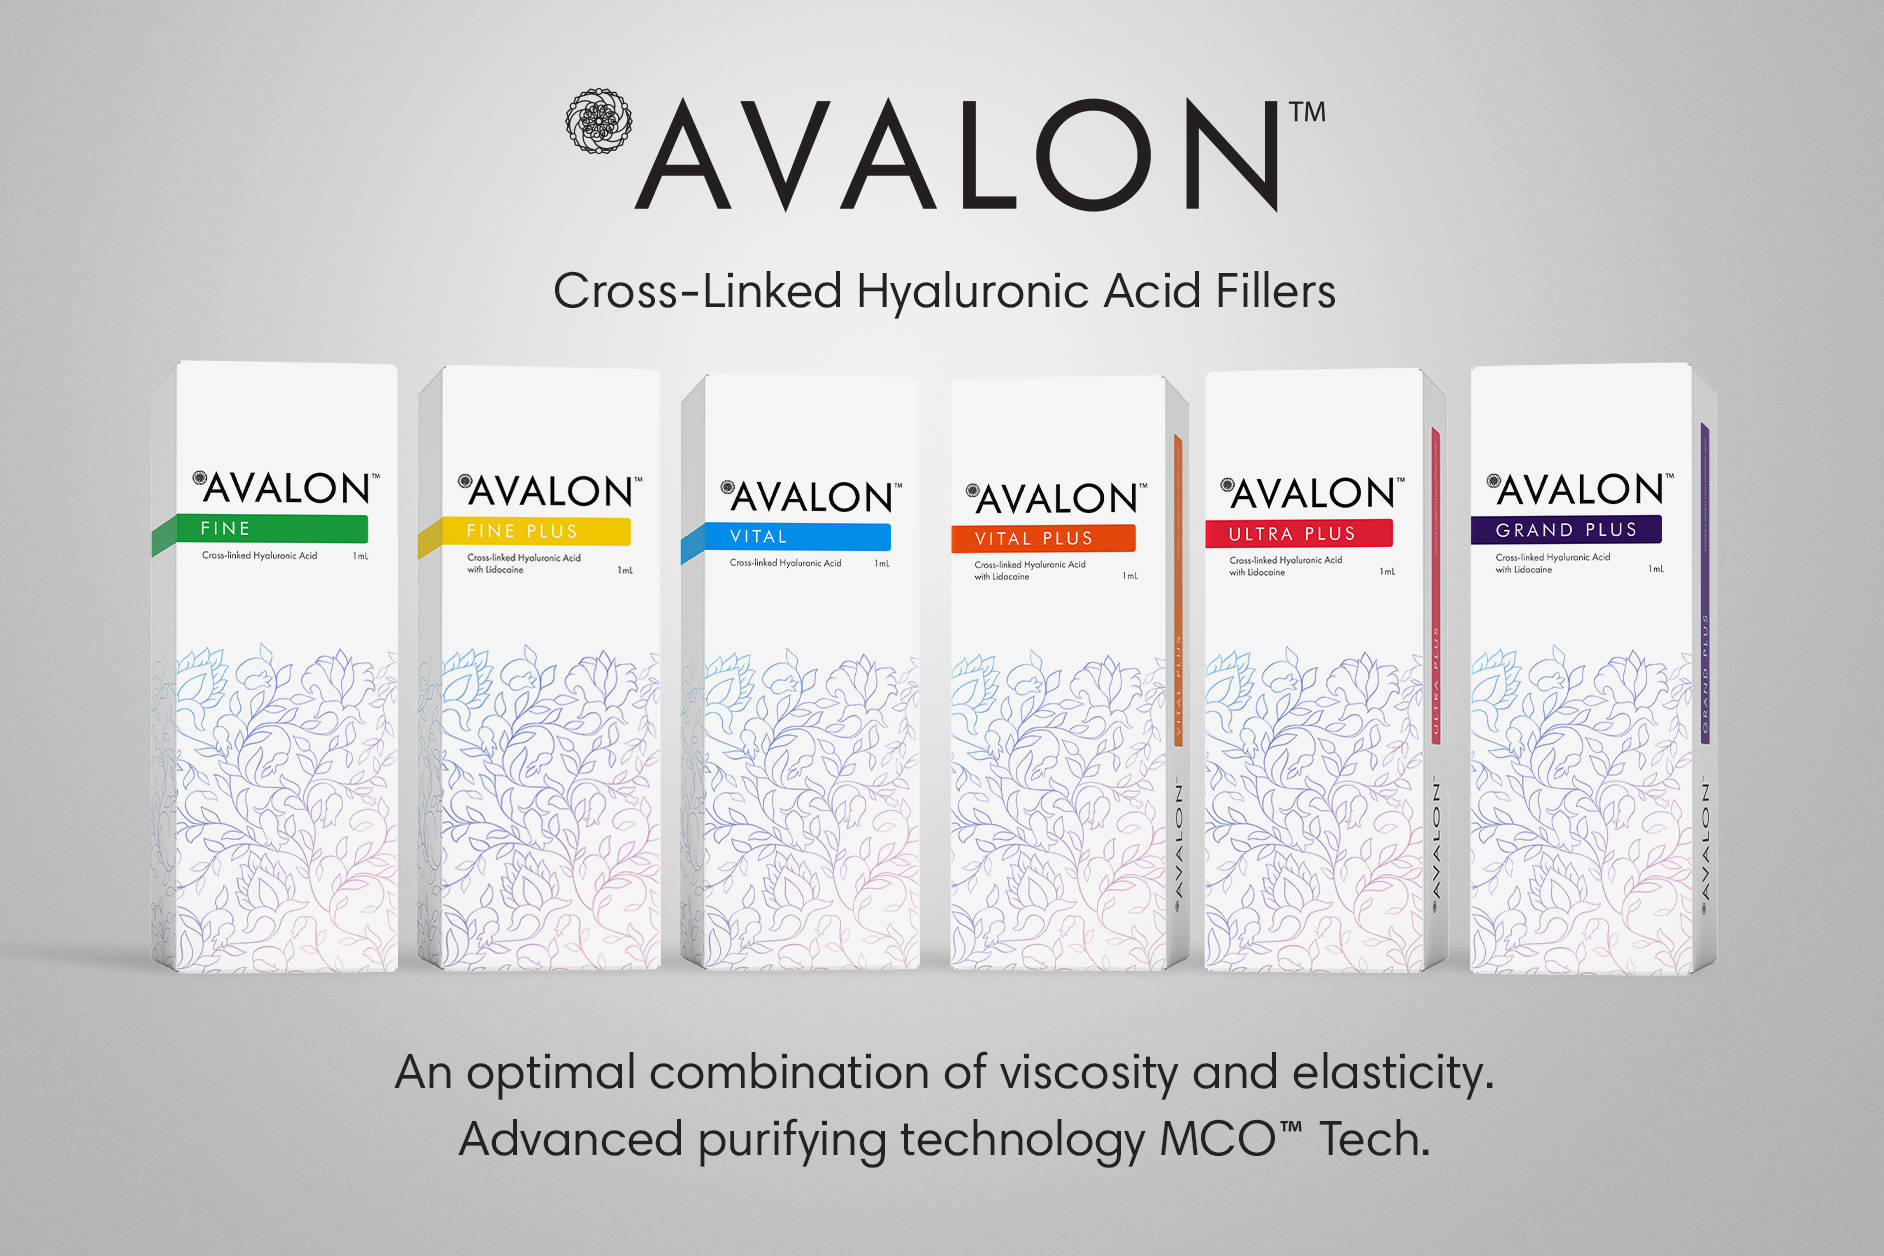 Avalon-fillers-Koru-Pharma